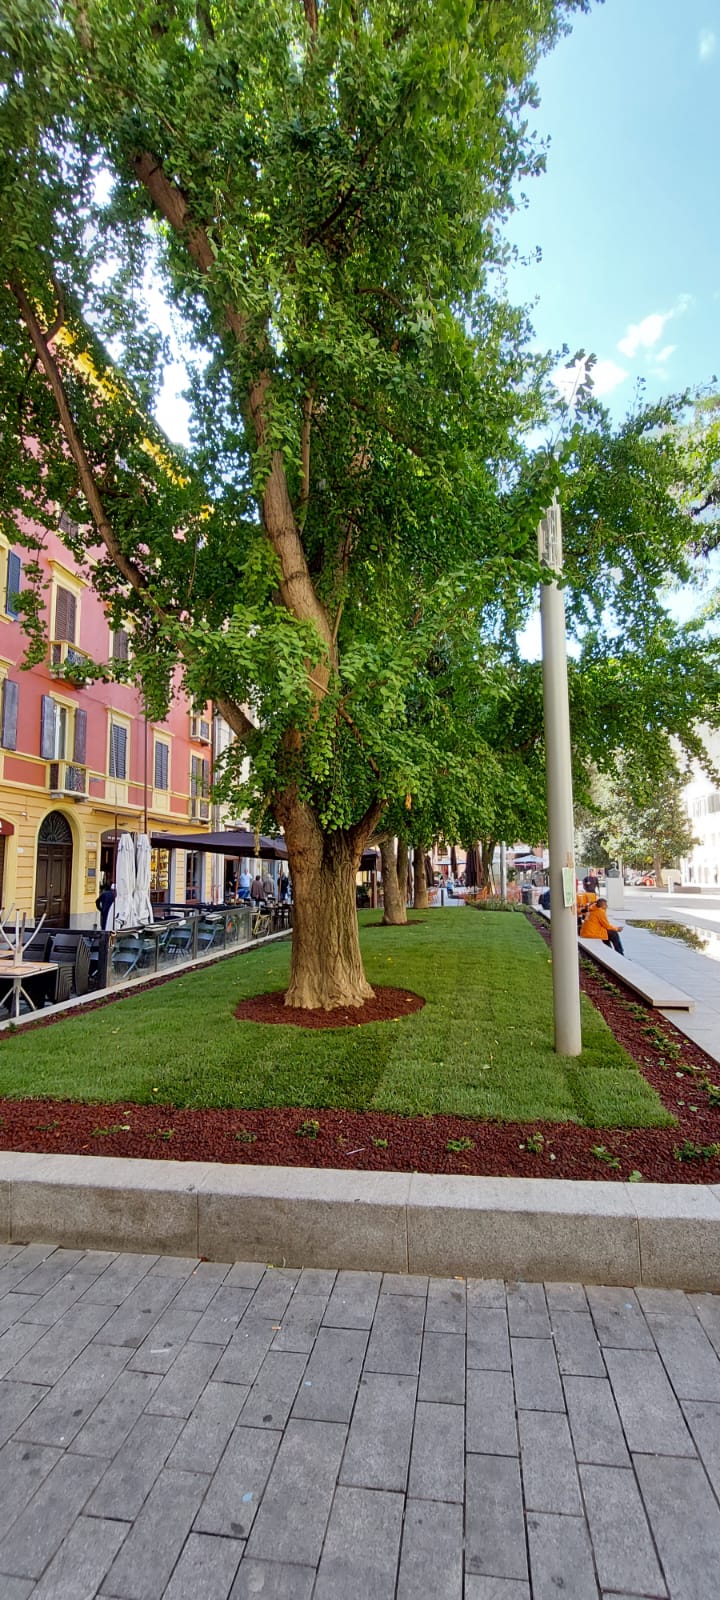  Piazza Mazzini più verde: erba, rose e siepi nelle aiuole